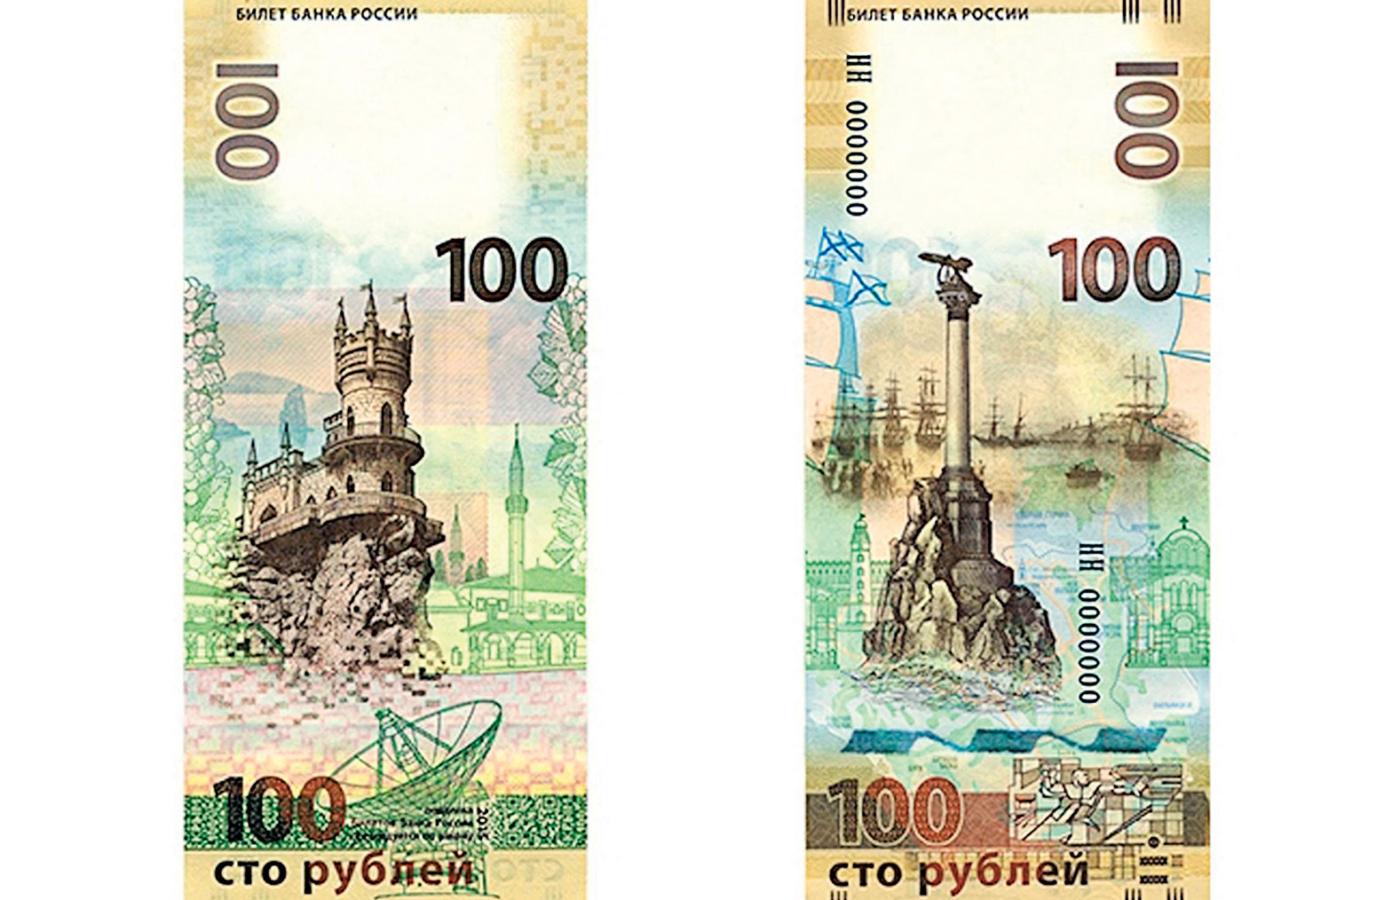 Bank Centralny Rosji, ogłosił otwarty konkurs na projekt nowych banknotów, o nominałach 200 i 2000 rubli.